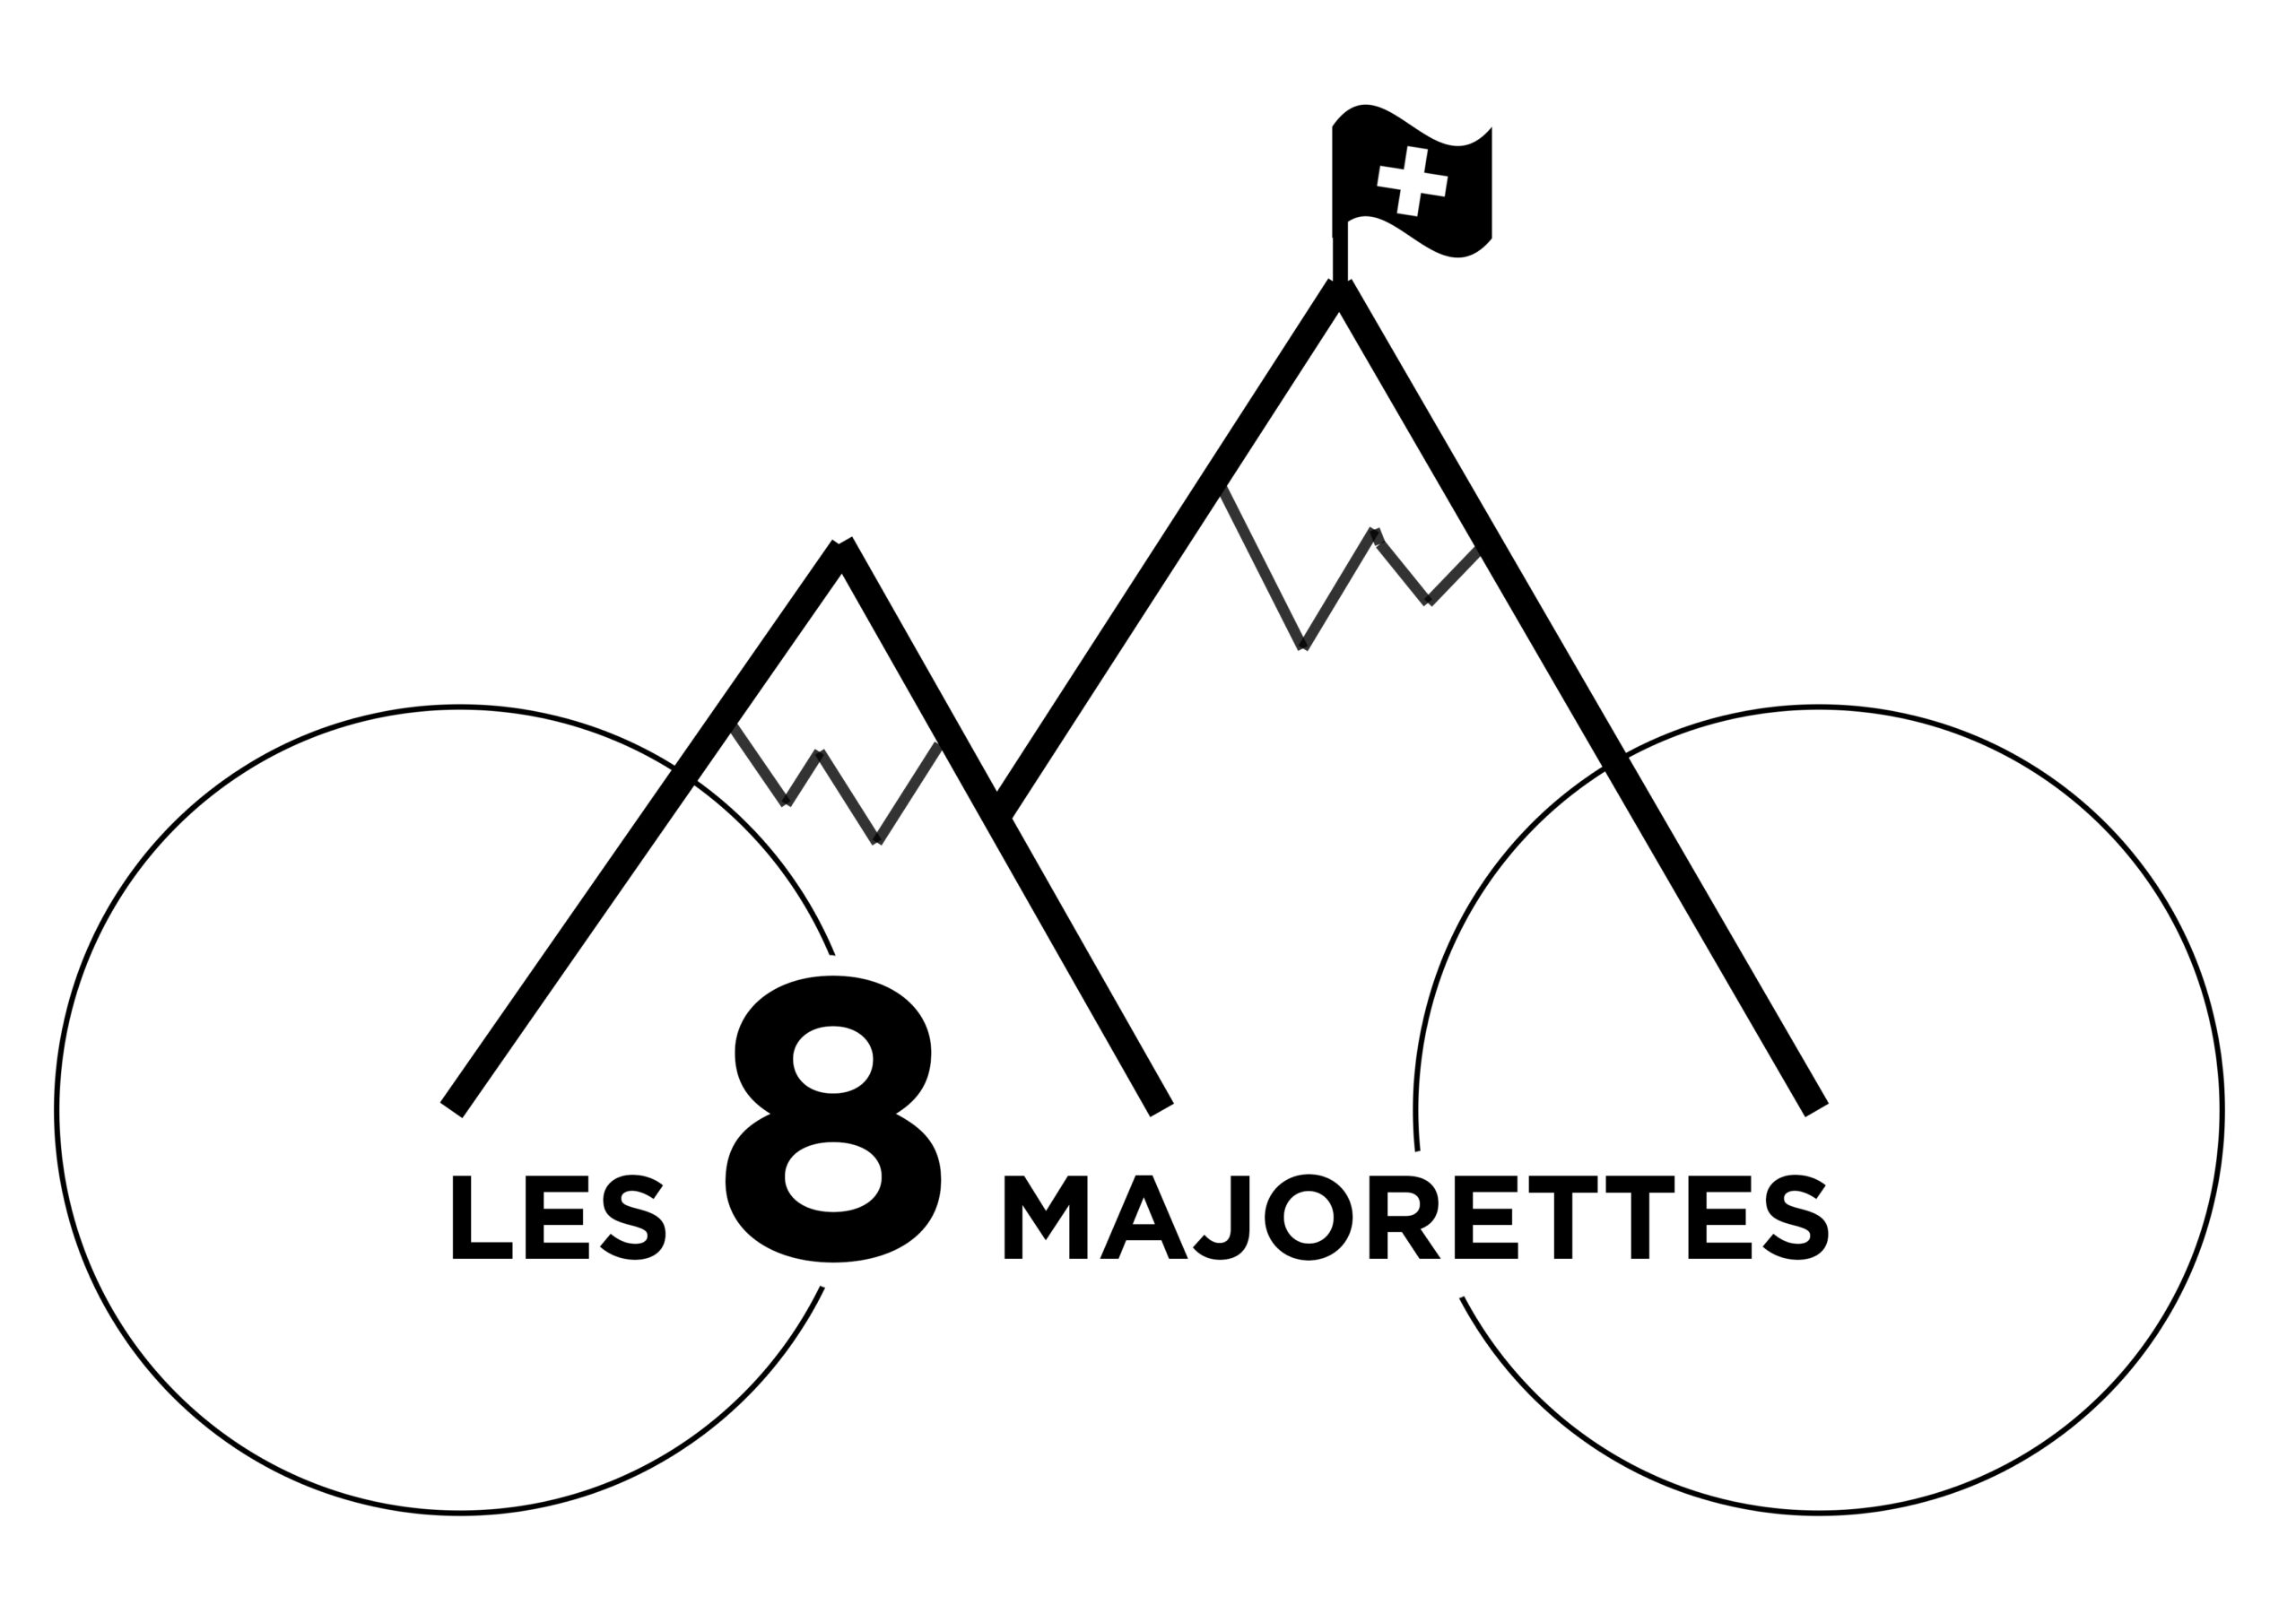 8 Majorettes